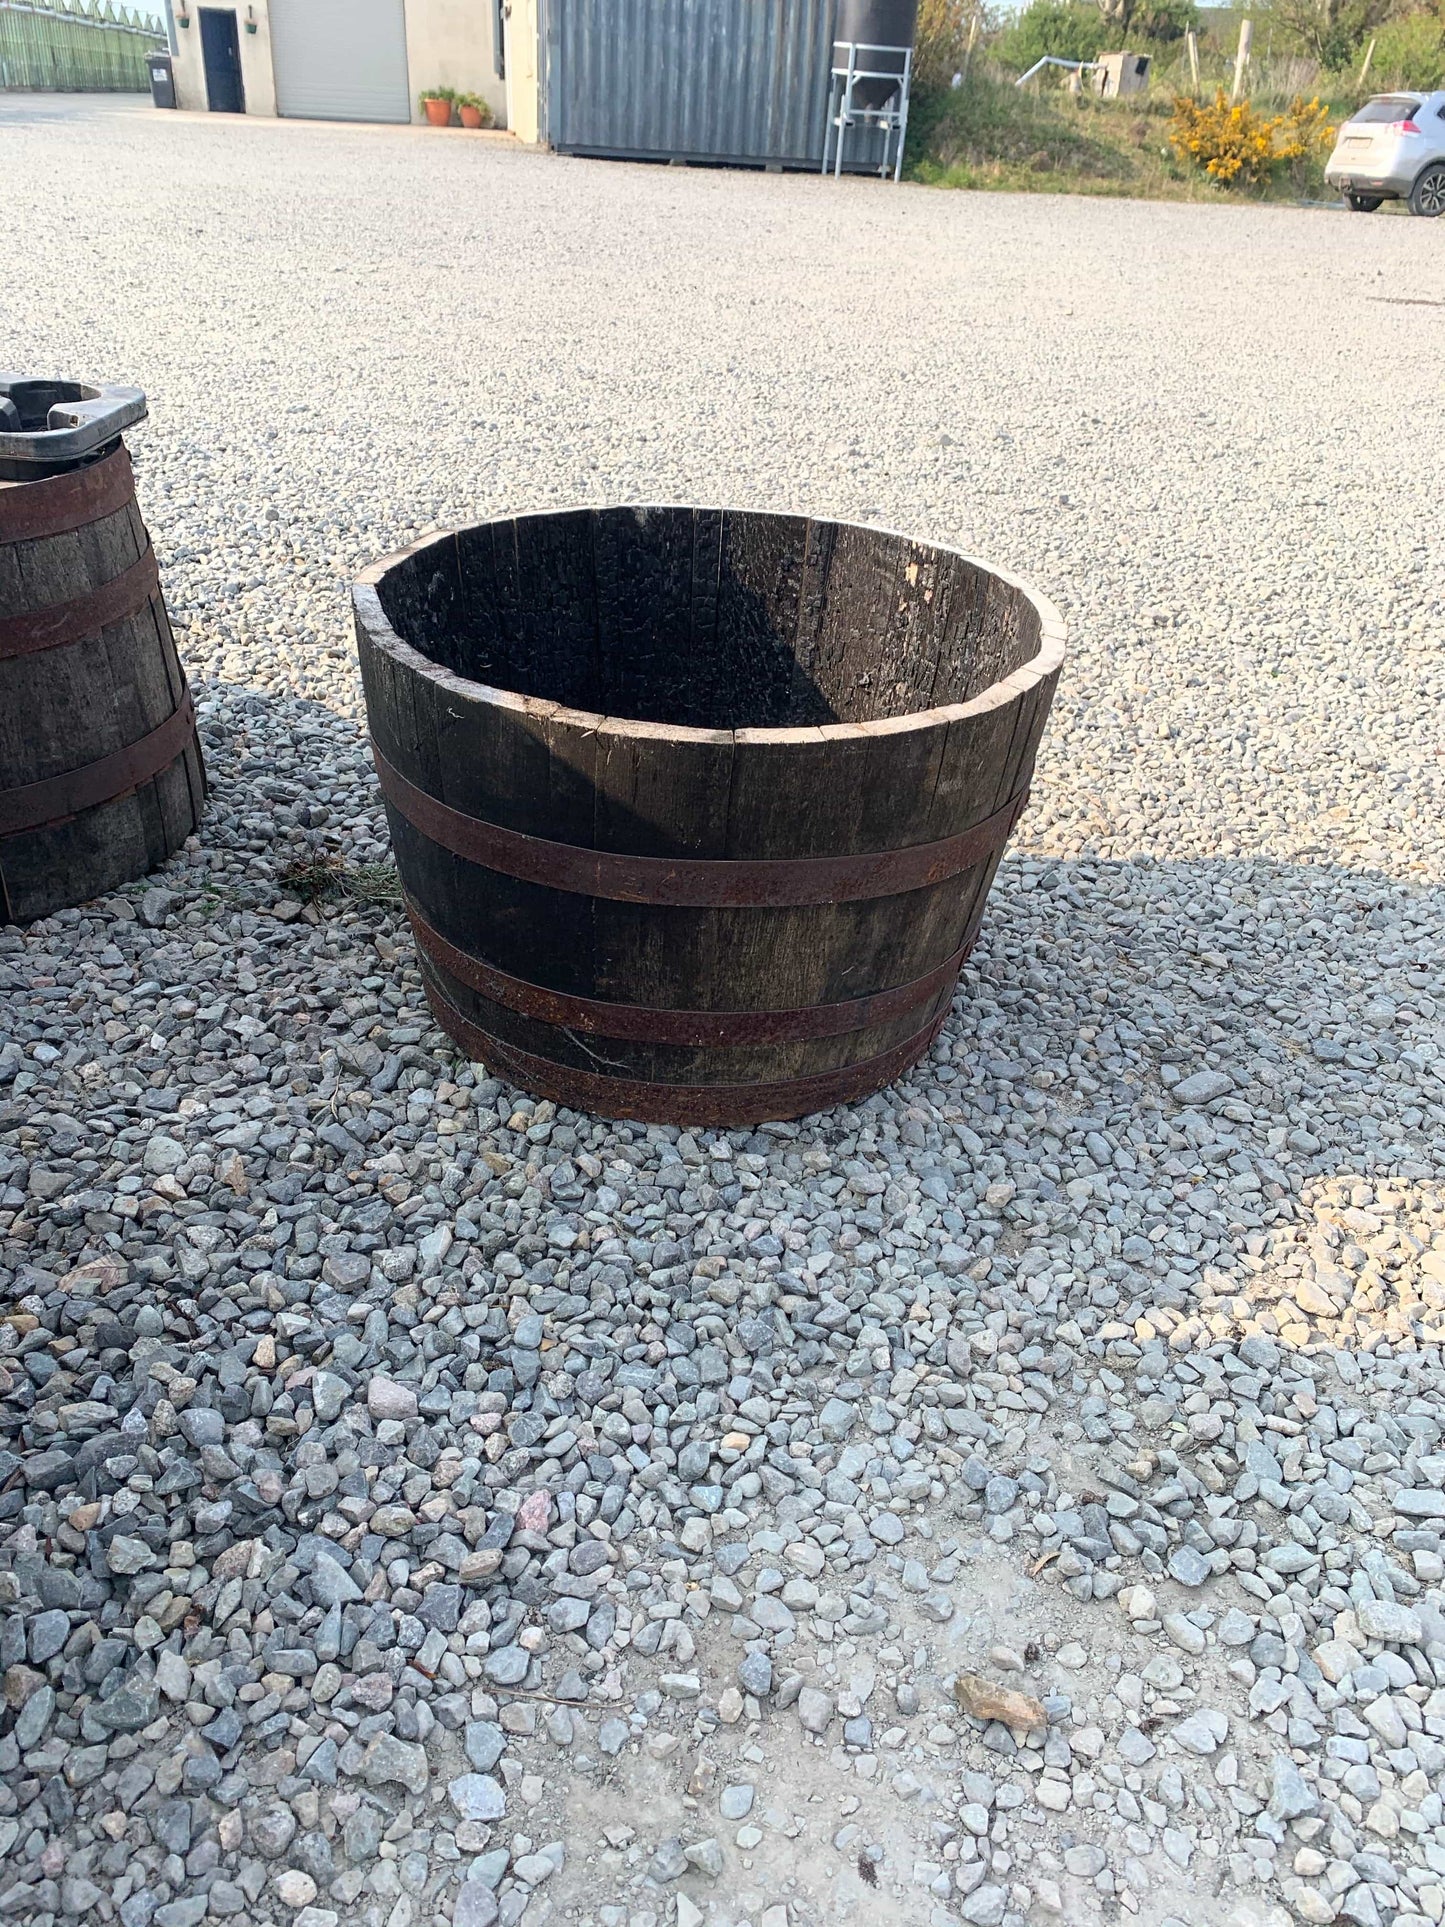 Pots - Half a Beer Barrel